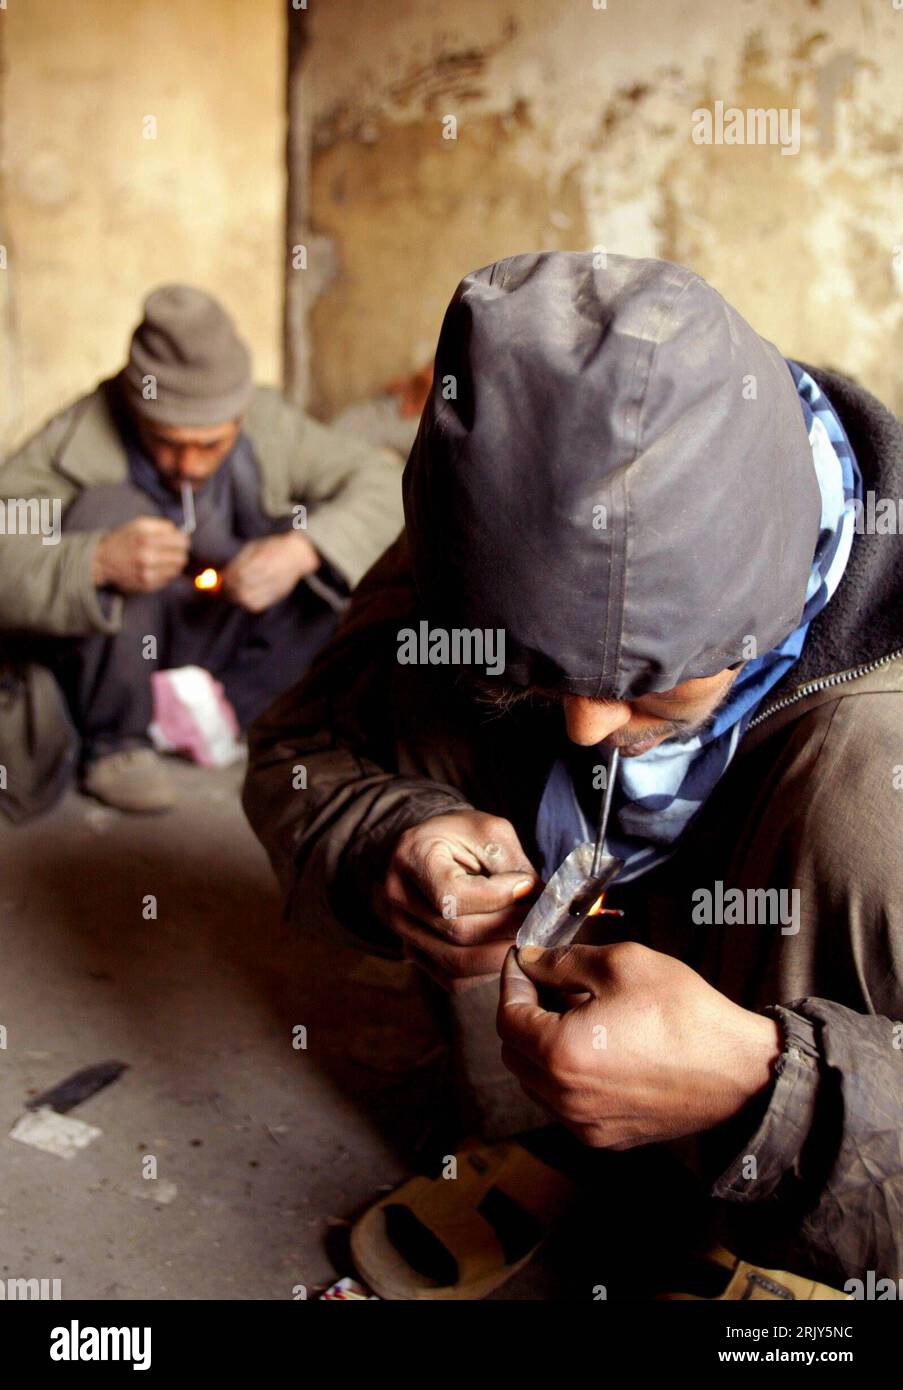 Bildnummer: 52452490 Datum: 10.03.2008 Copyright: imago/Xinhua Drogensüchtiger inhaliert flüssiges heroin in einem verlassenen Gebäude in Kabul - PUBLICATIONxNOTxINxCHN, Personen; 2008, Kabul, Afghanistan , Drogenabhängige, Drogenabhängigkeit, Drogenabhängiger, heroinsüchtig, Suchtverhalten, Heroinsucht, abhängig, Abhängigkeit, Junkie, Armut, Mann, flüssig, erhitzen, inhalieren; , hoch, Kbdig, Einzelbild, Drogen, Gesellschaft, , Gesellschaft, Asien Foto Stock